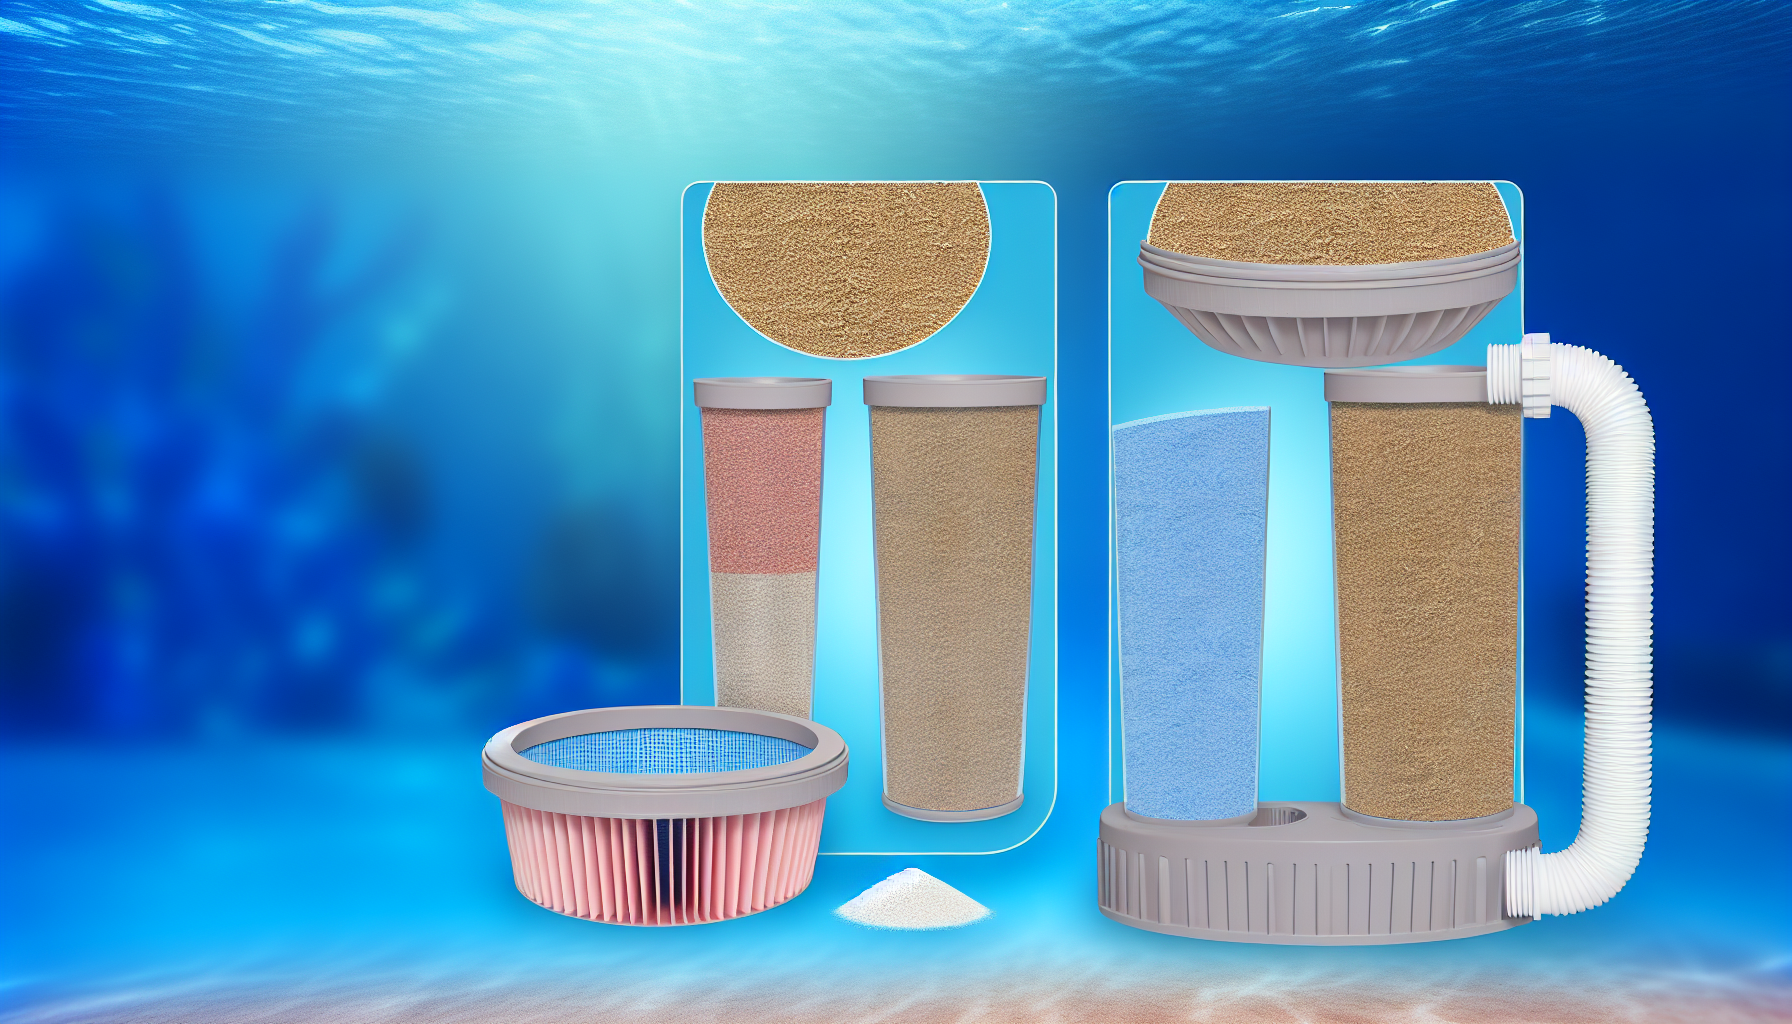 Schematische Darstellung eines Schwimmbad-Sandfiltersystems mit verschiedenen Filterstufen auf einem aquatischen Hintergrund.